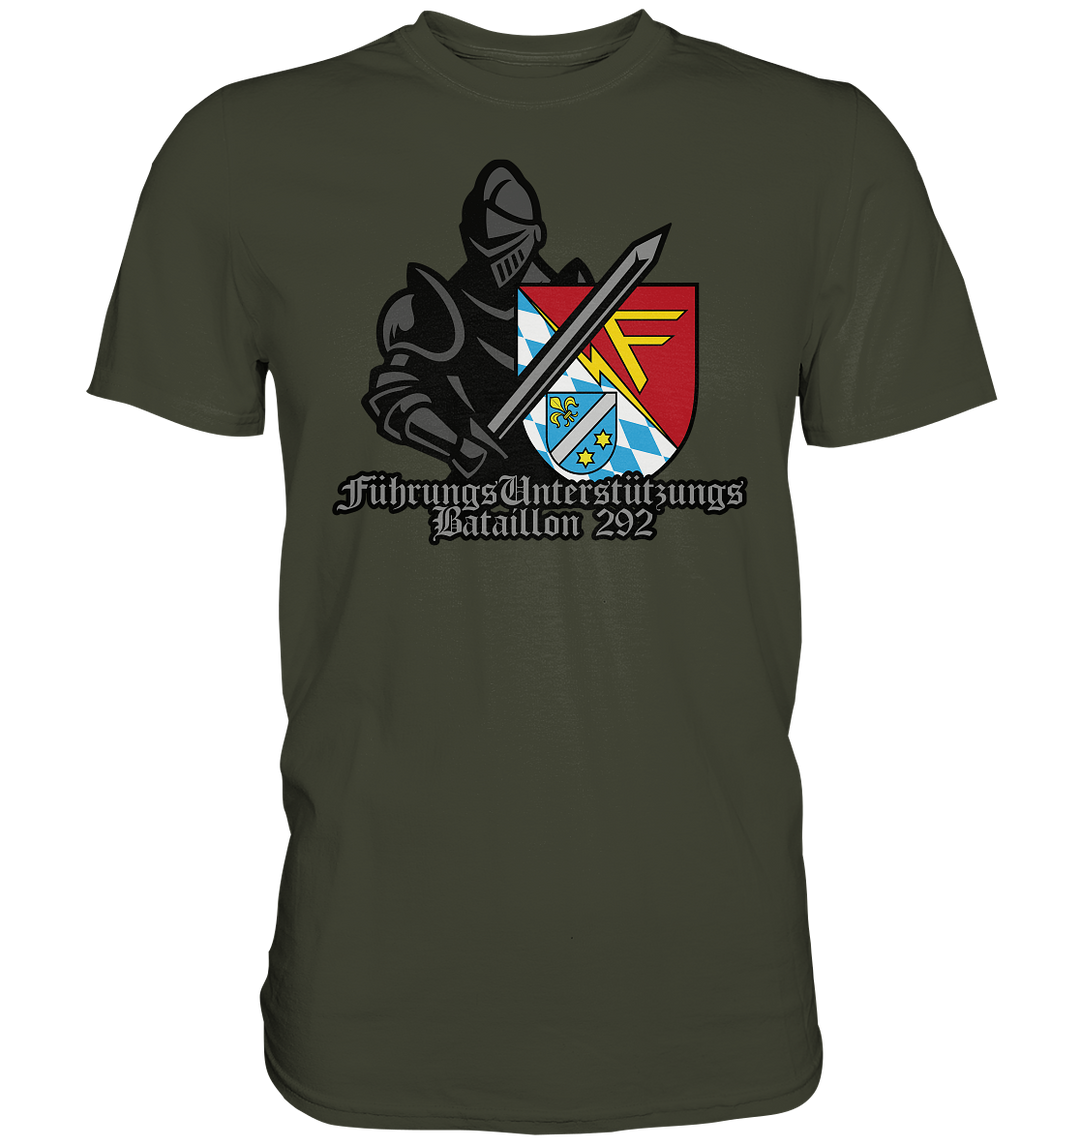 "Führungsunterstützungsbataillon 292 - Ritter" - Premium Shirt